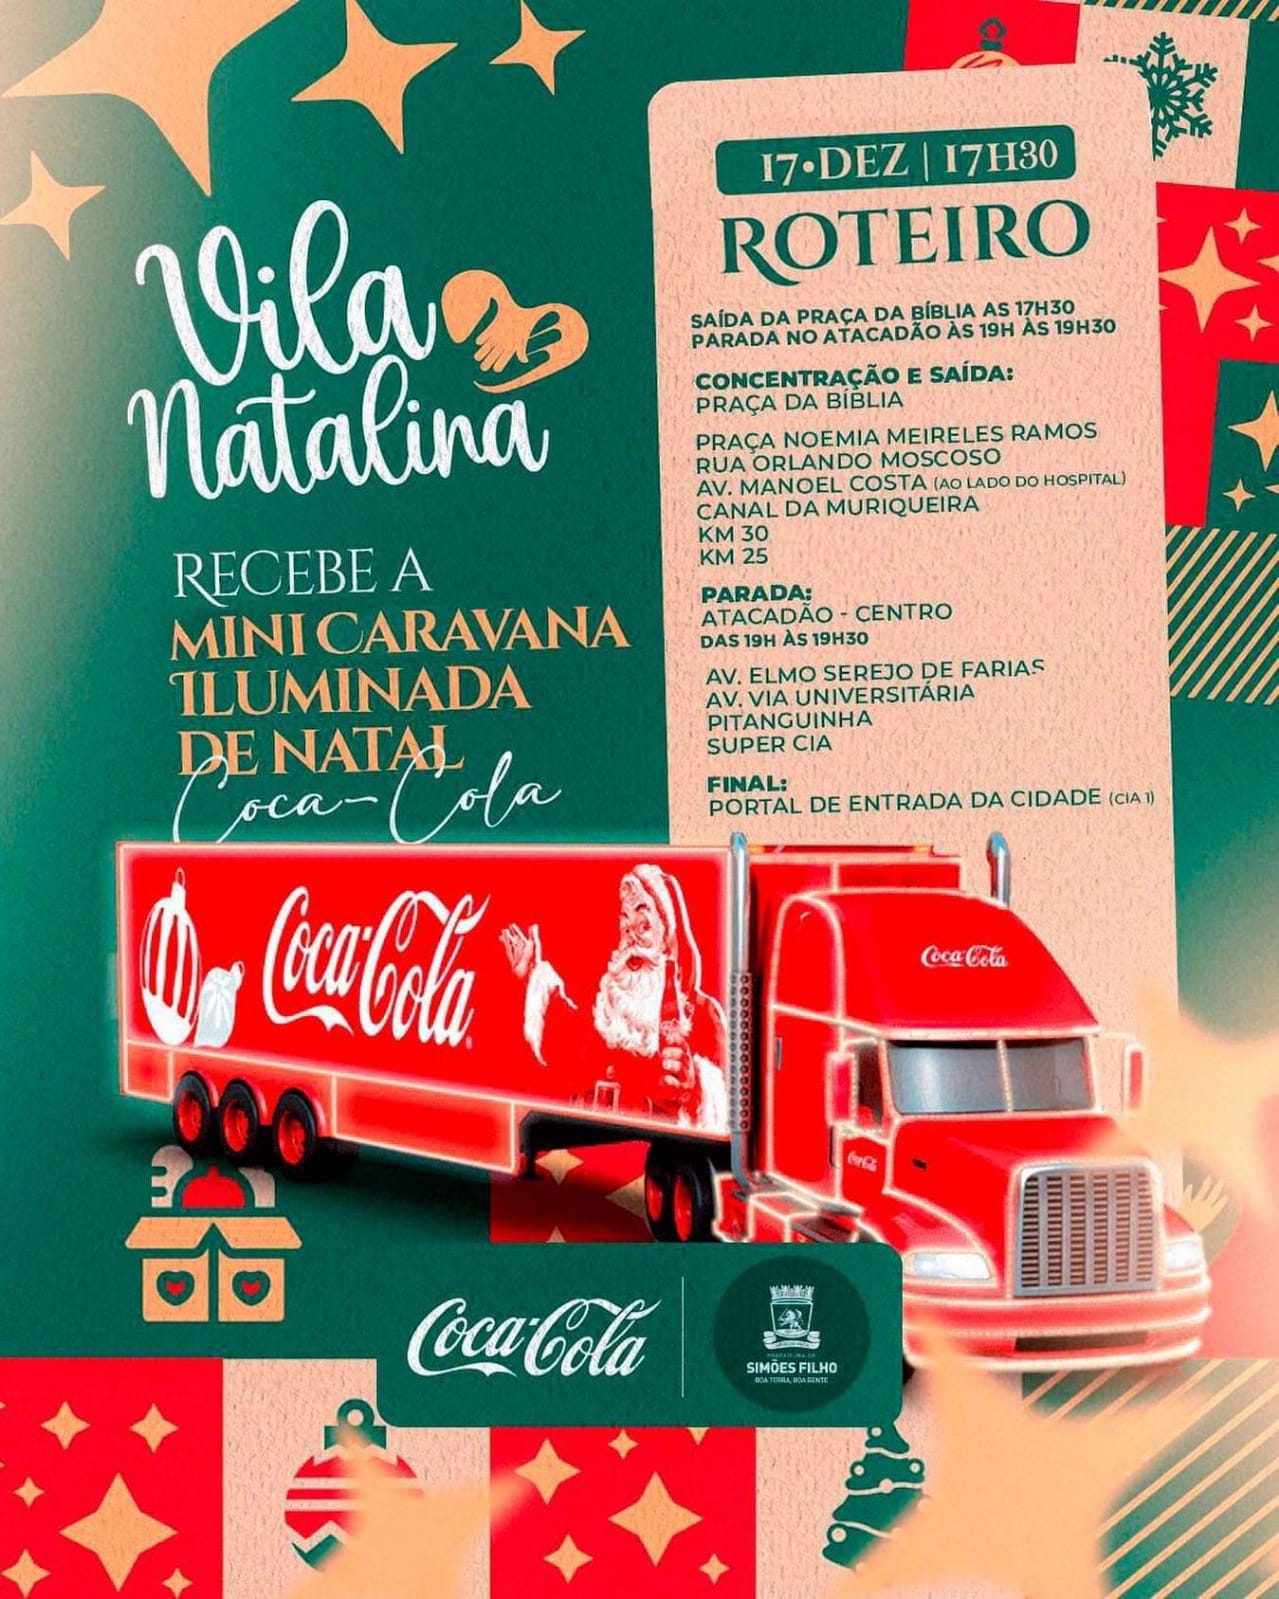 Caravana de Natal coca-cola